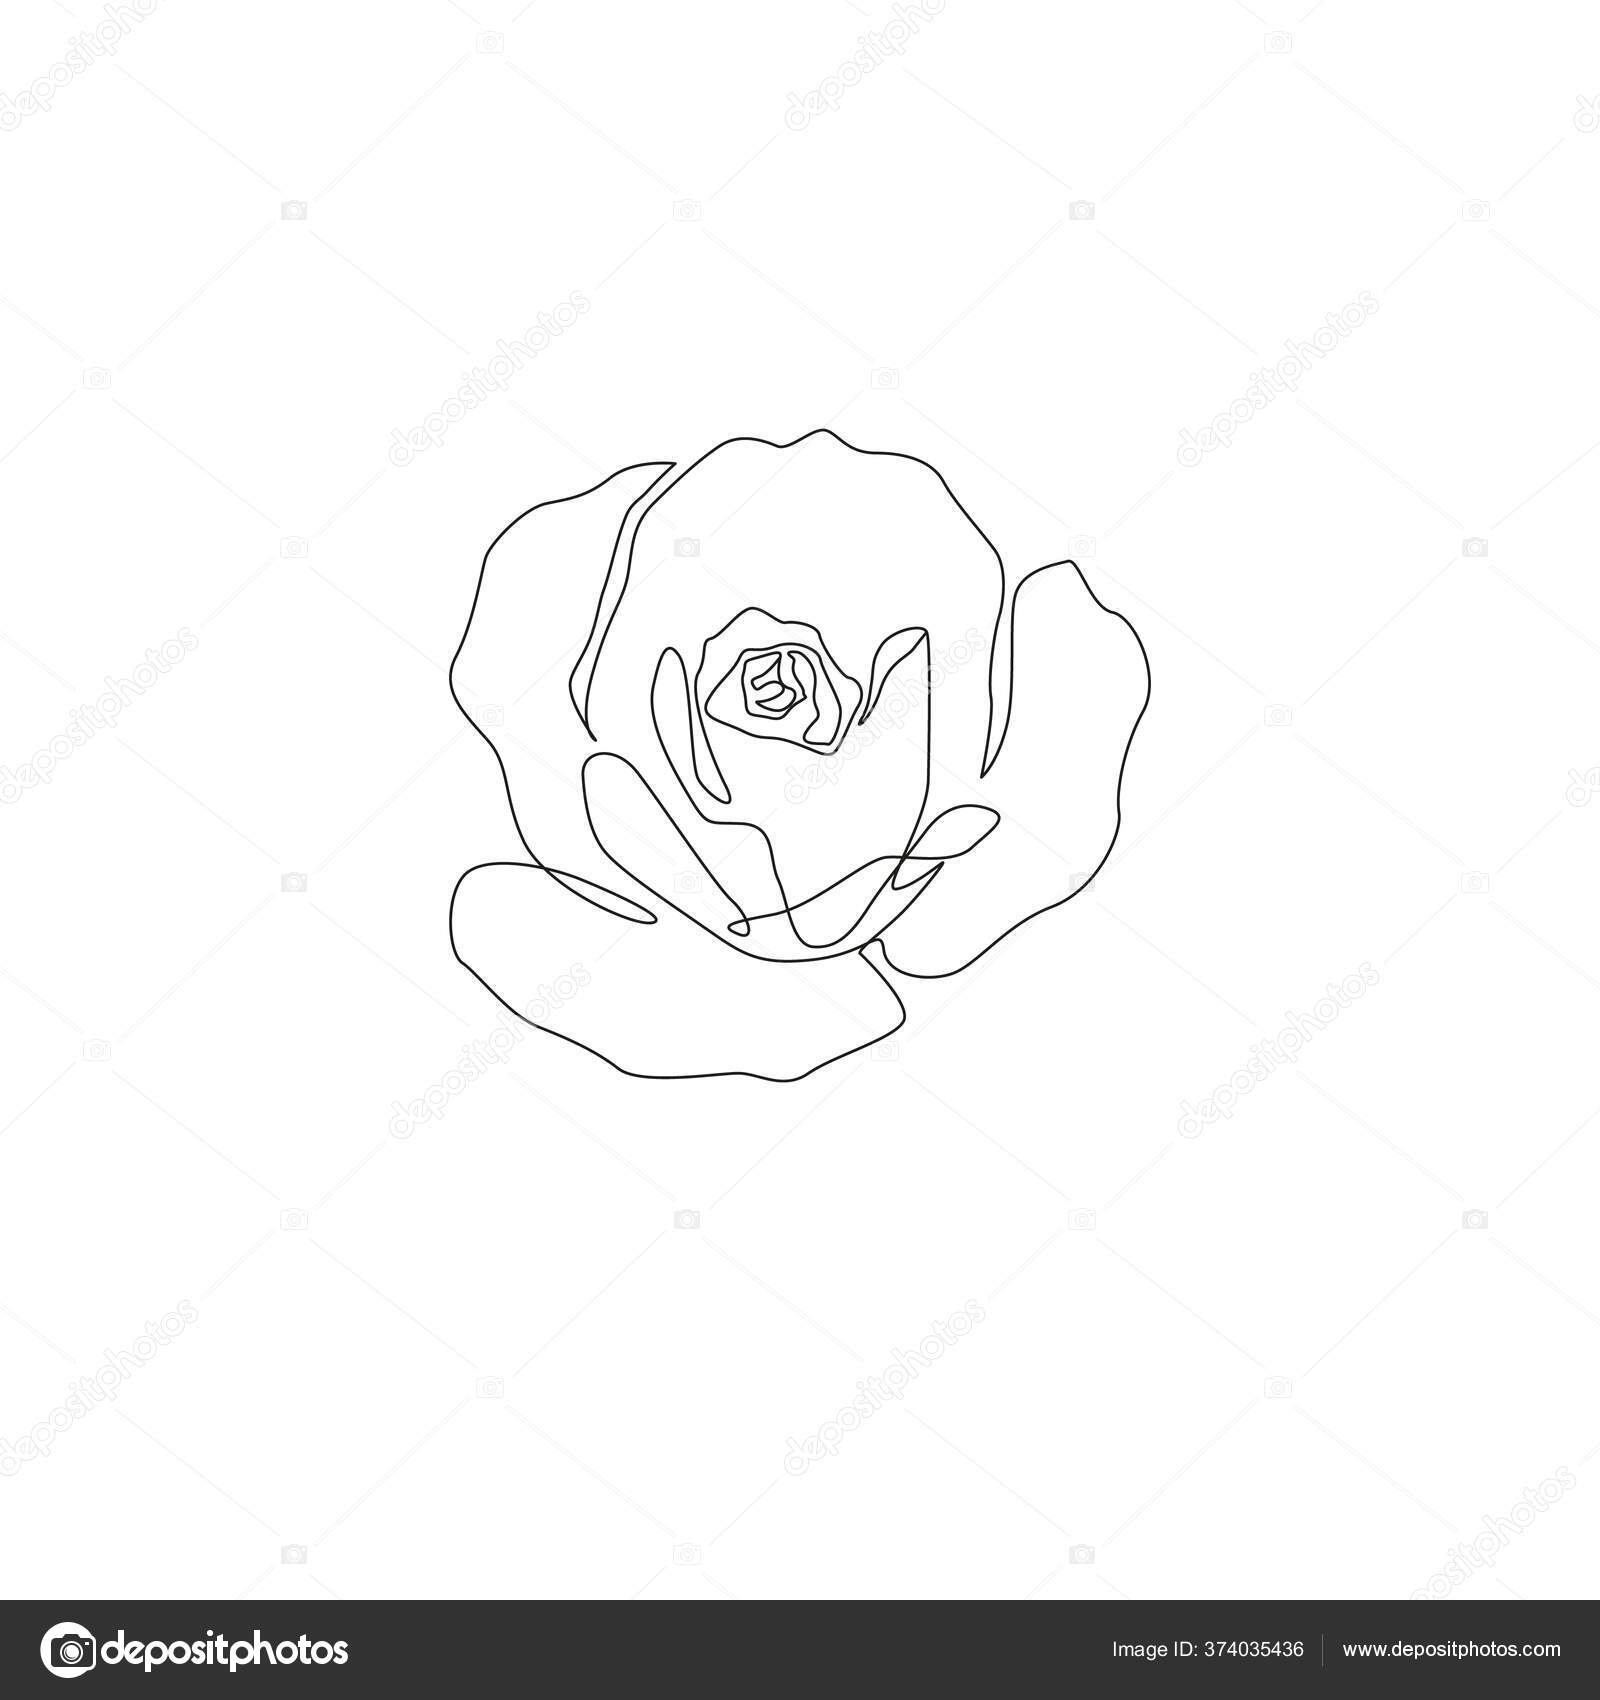 Rose Line Art Poster - Flower illustration